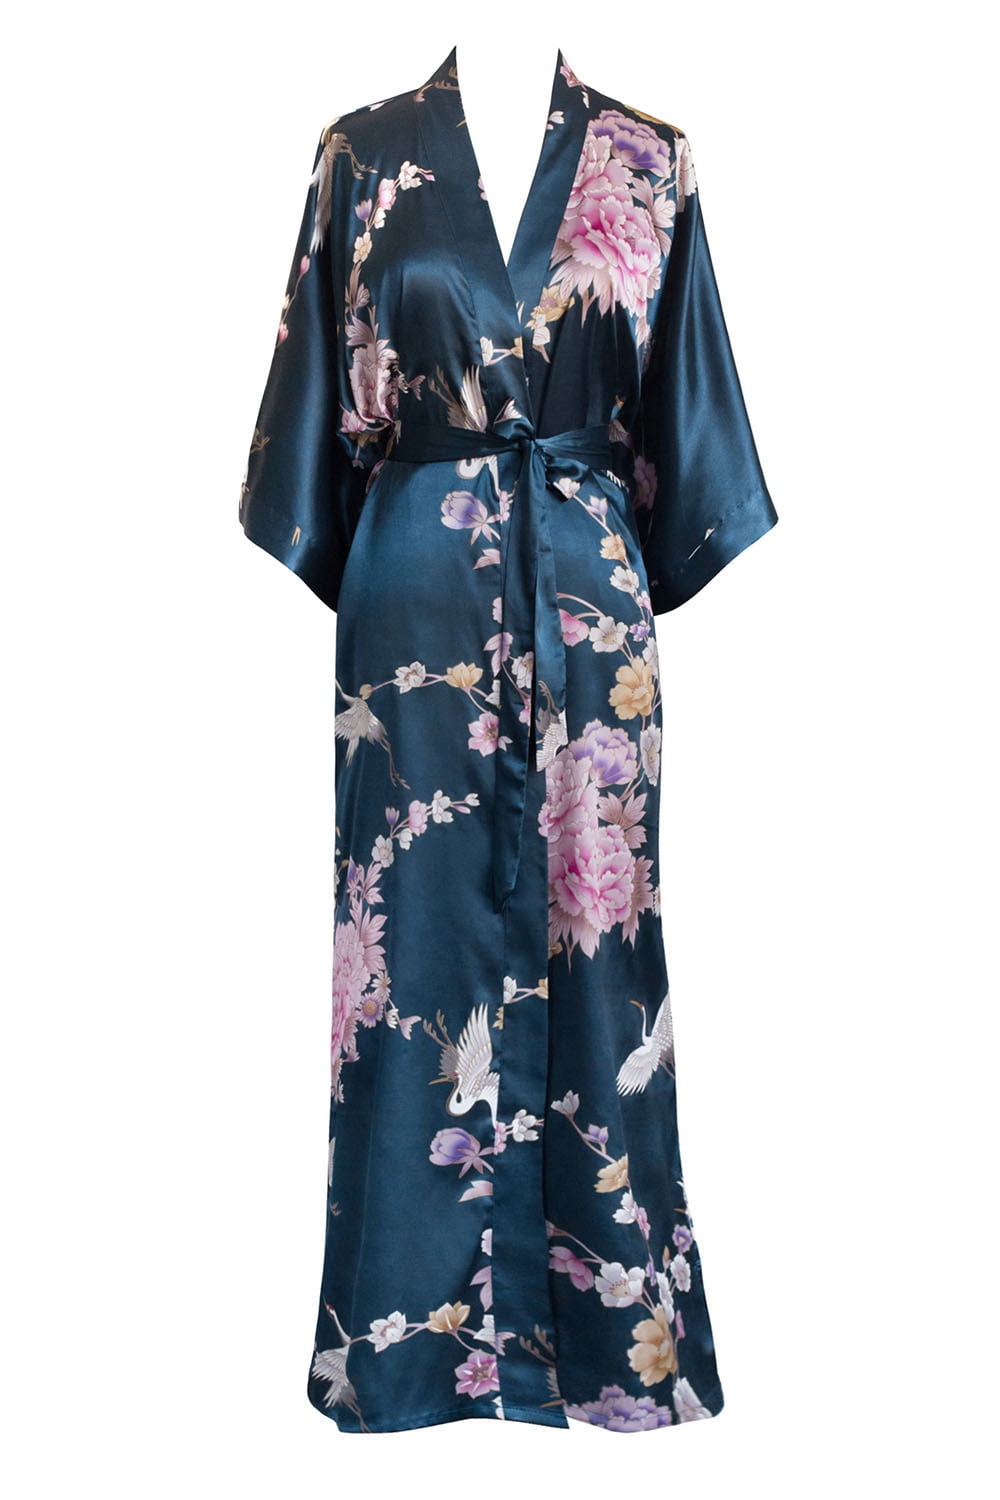 KIM+ONO - KIM+ONO Women's Satin Kimono Robe Long - Floral ...